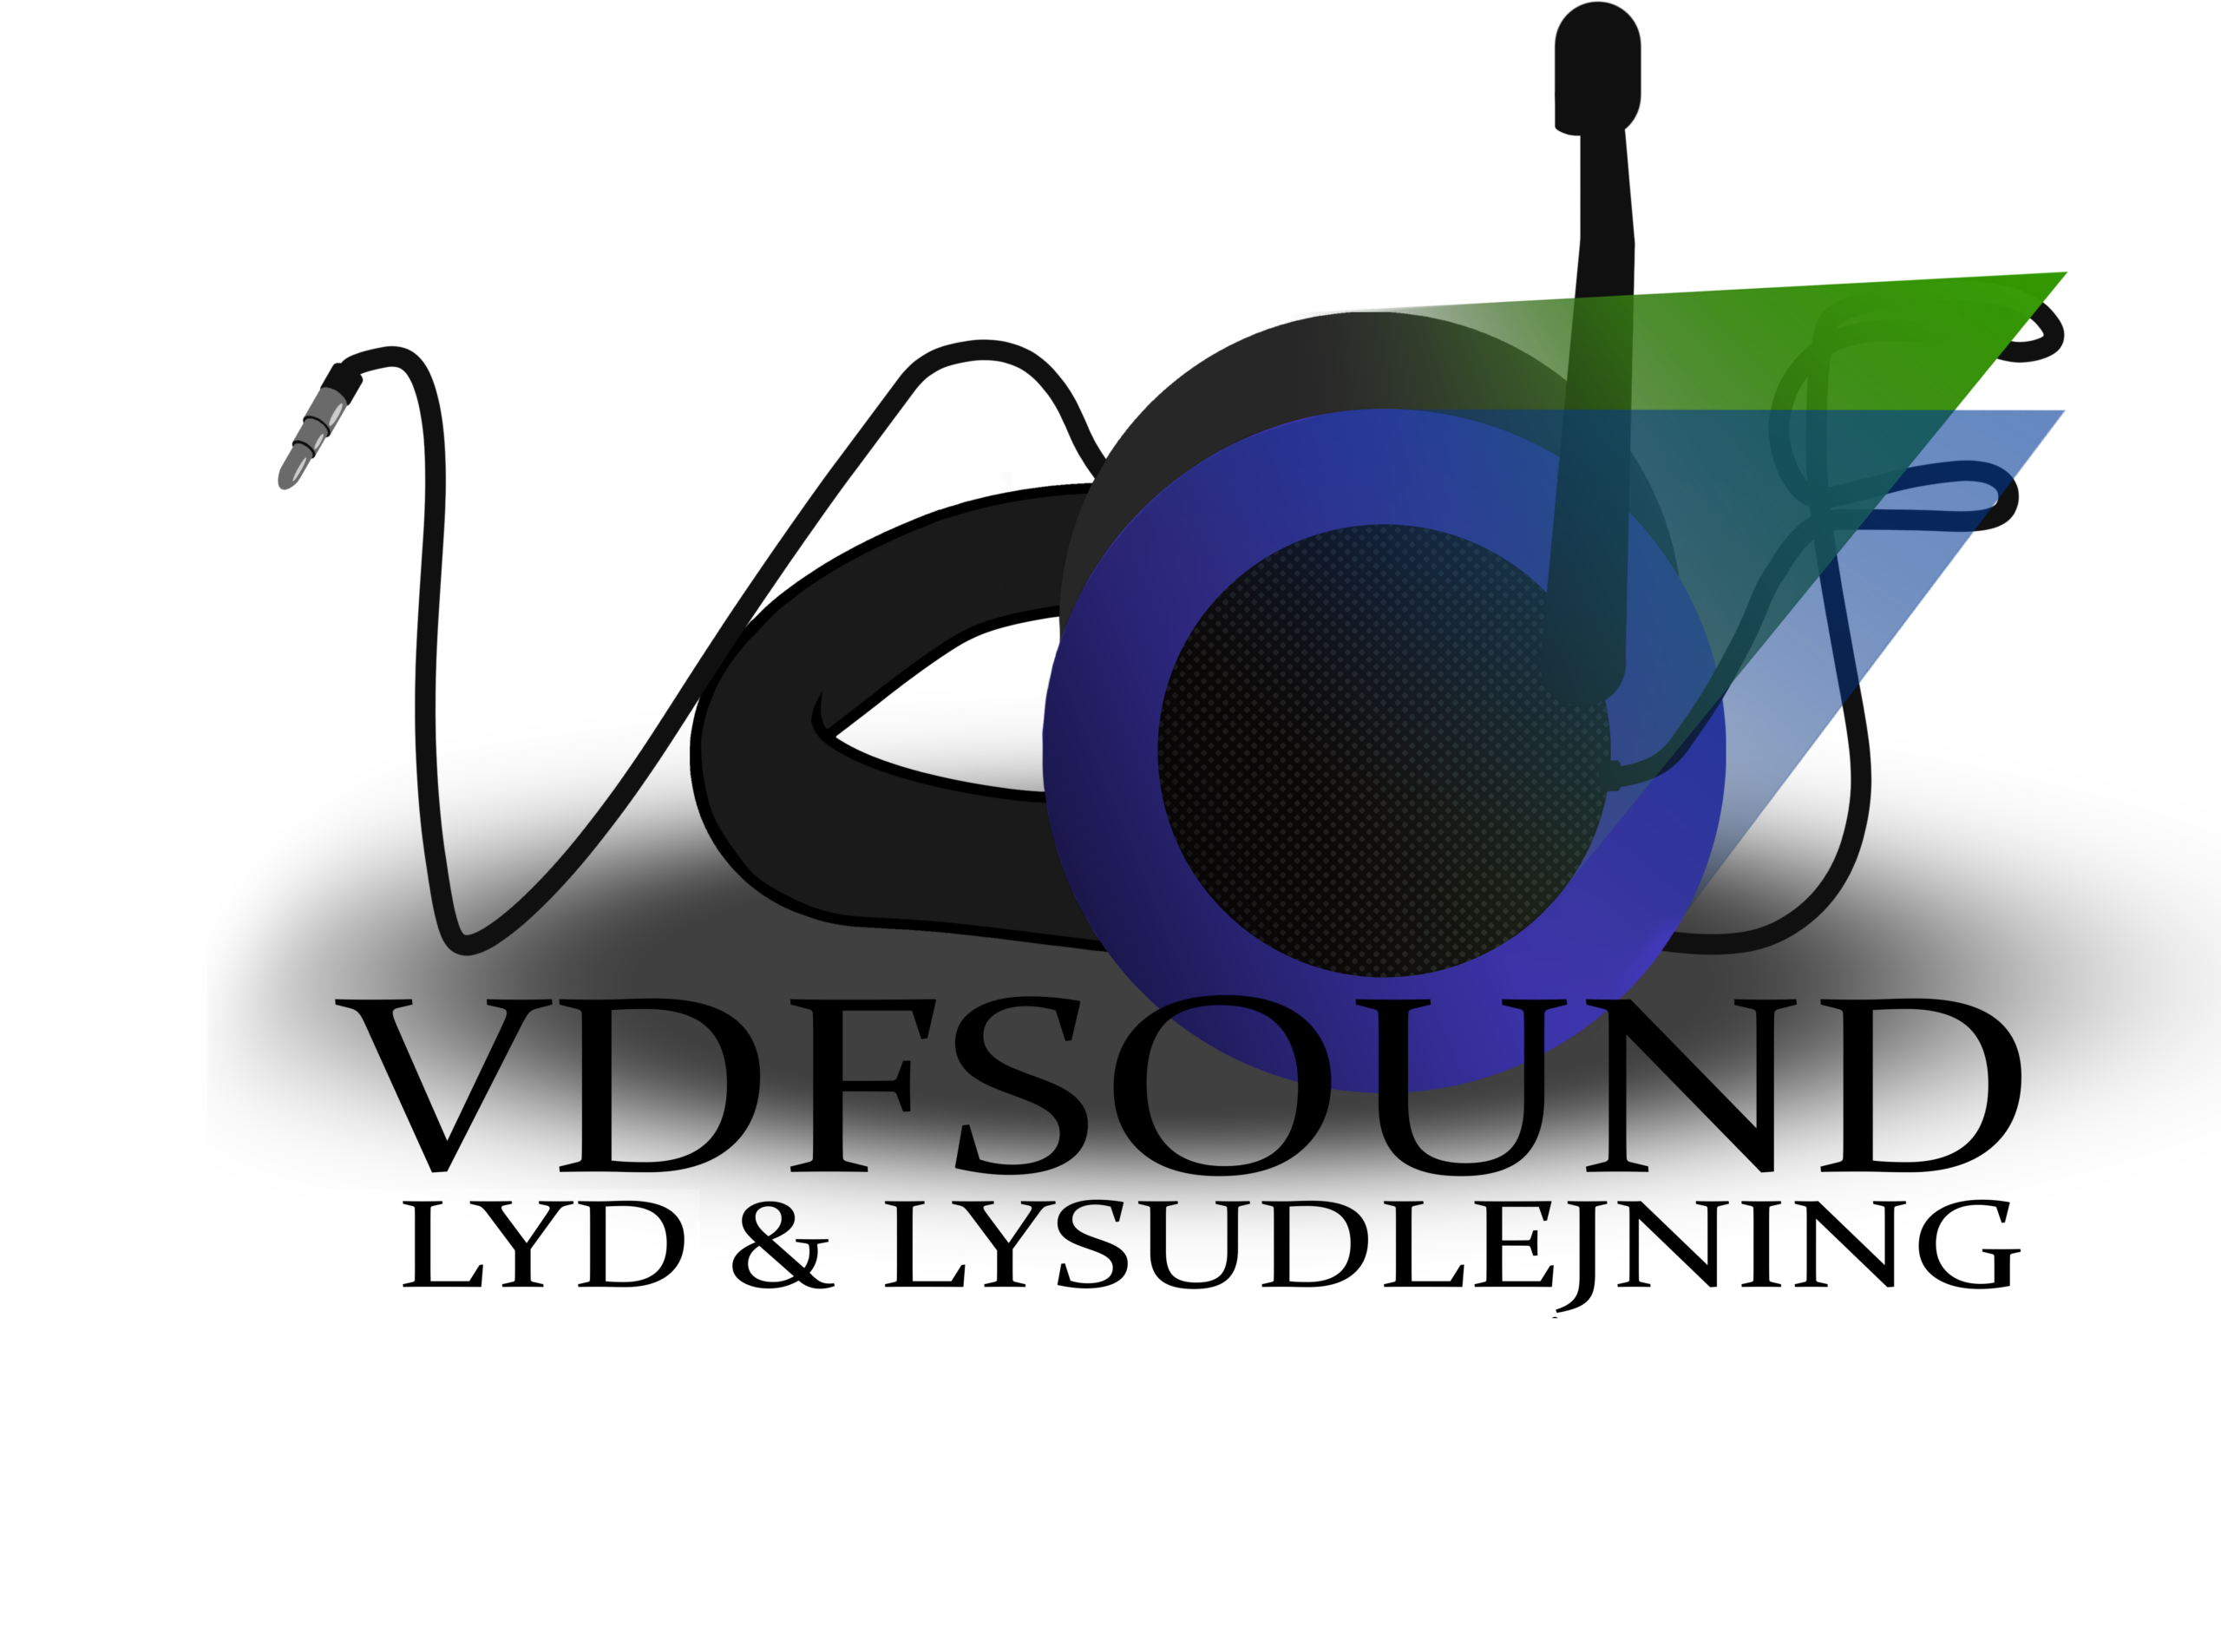 VDFsound